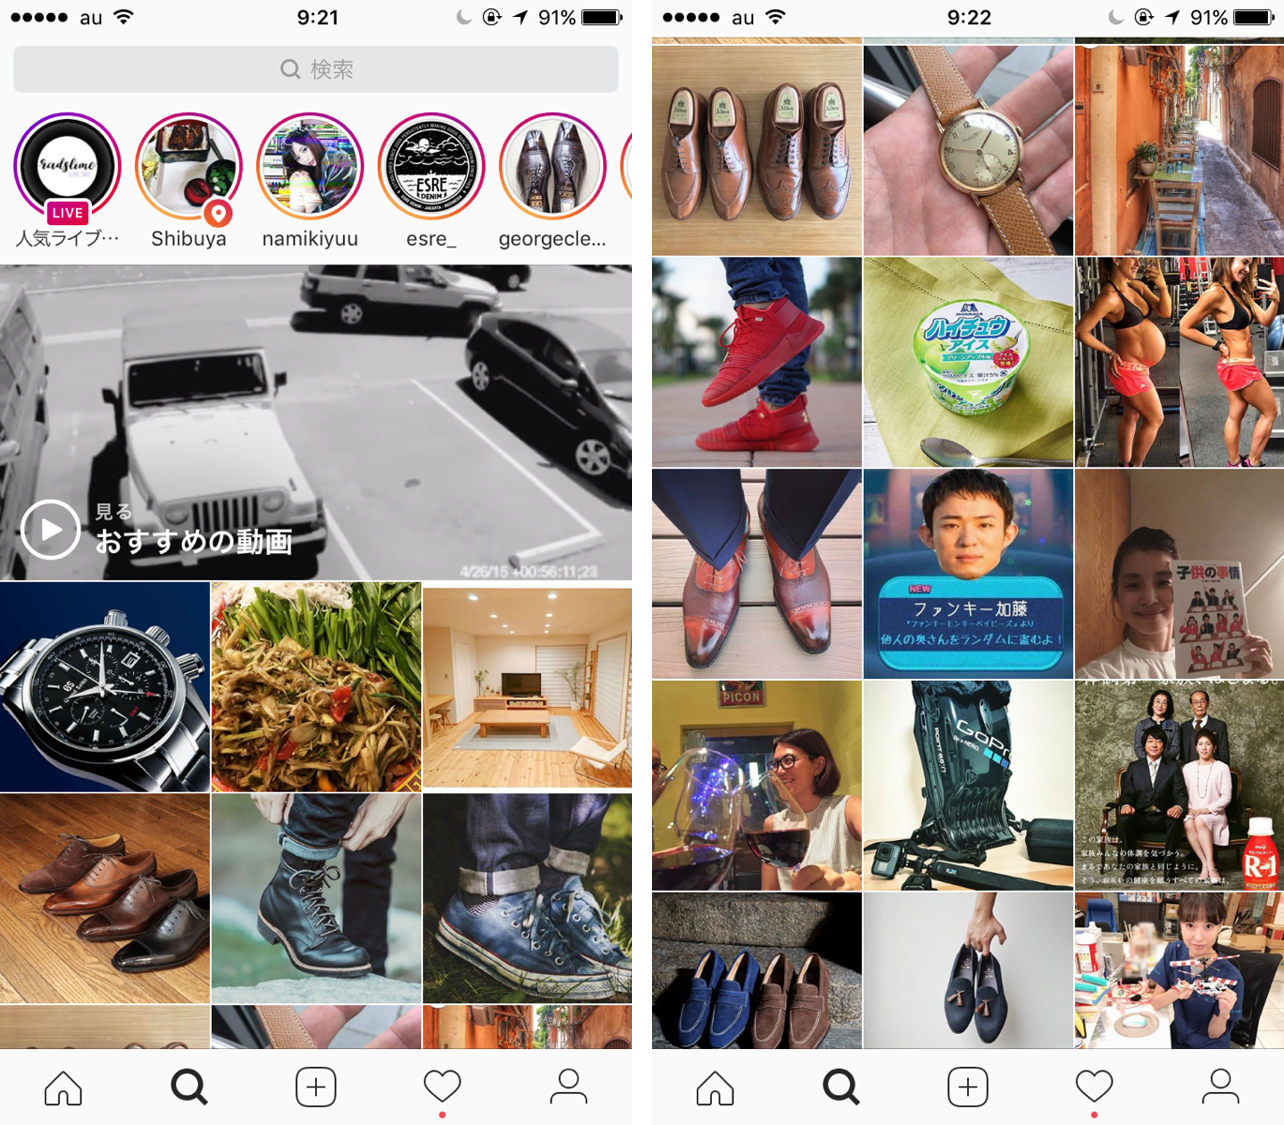 Instagram インスタグラム 発見 Explore タブの表示の仕組みと特徴まとめ